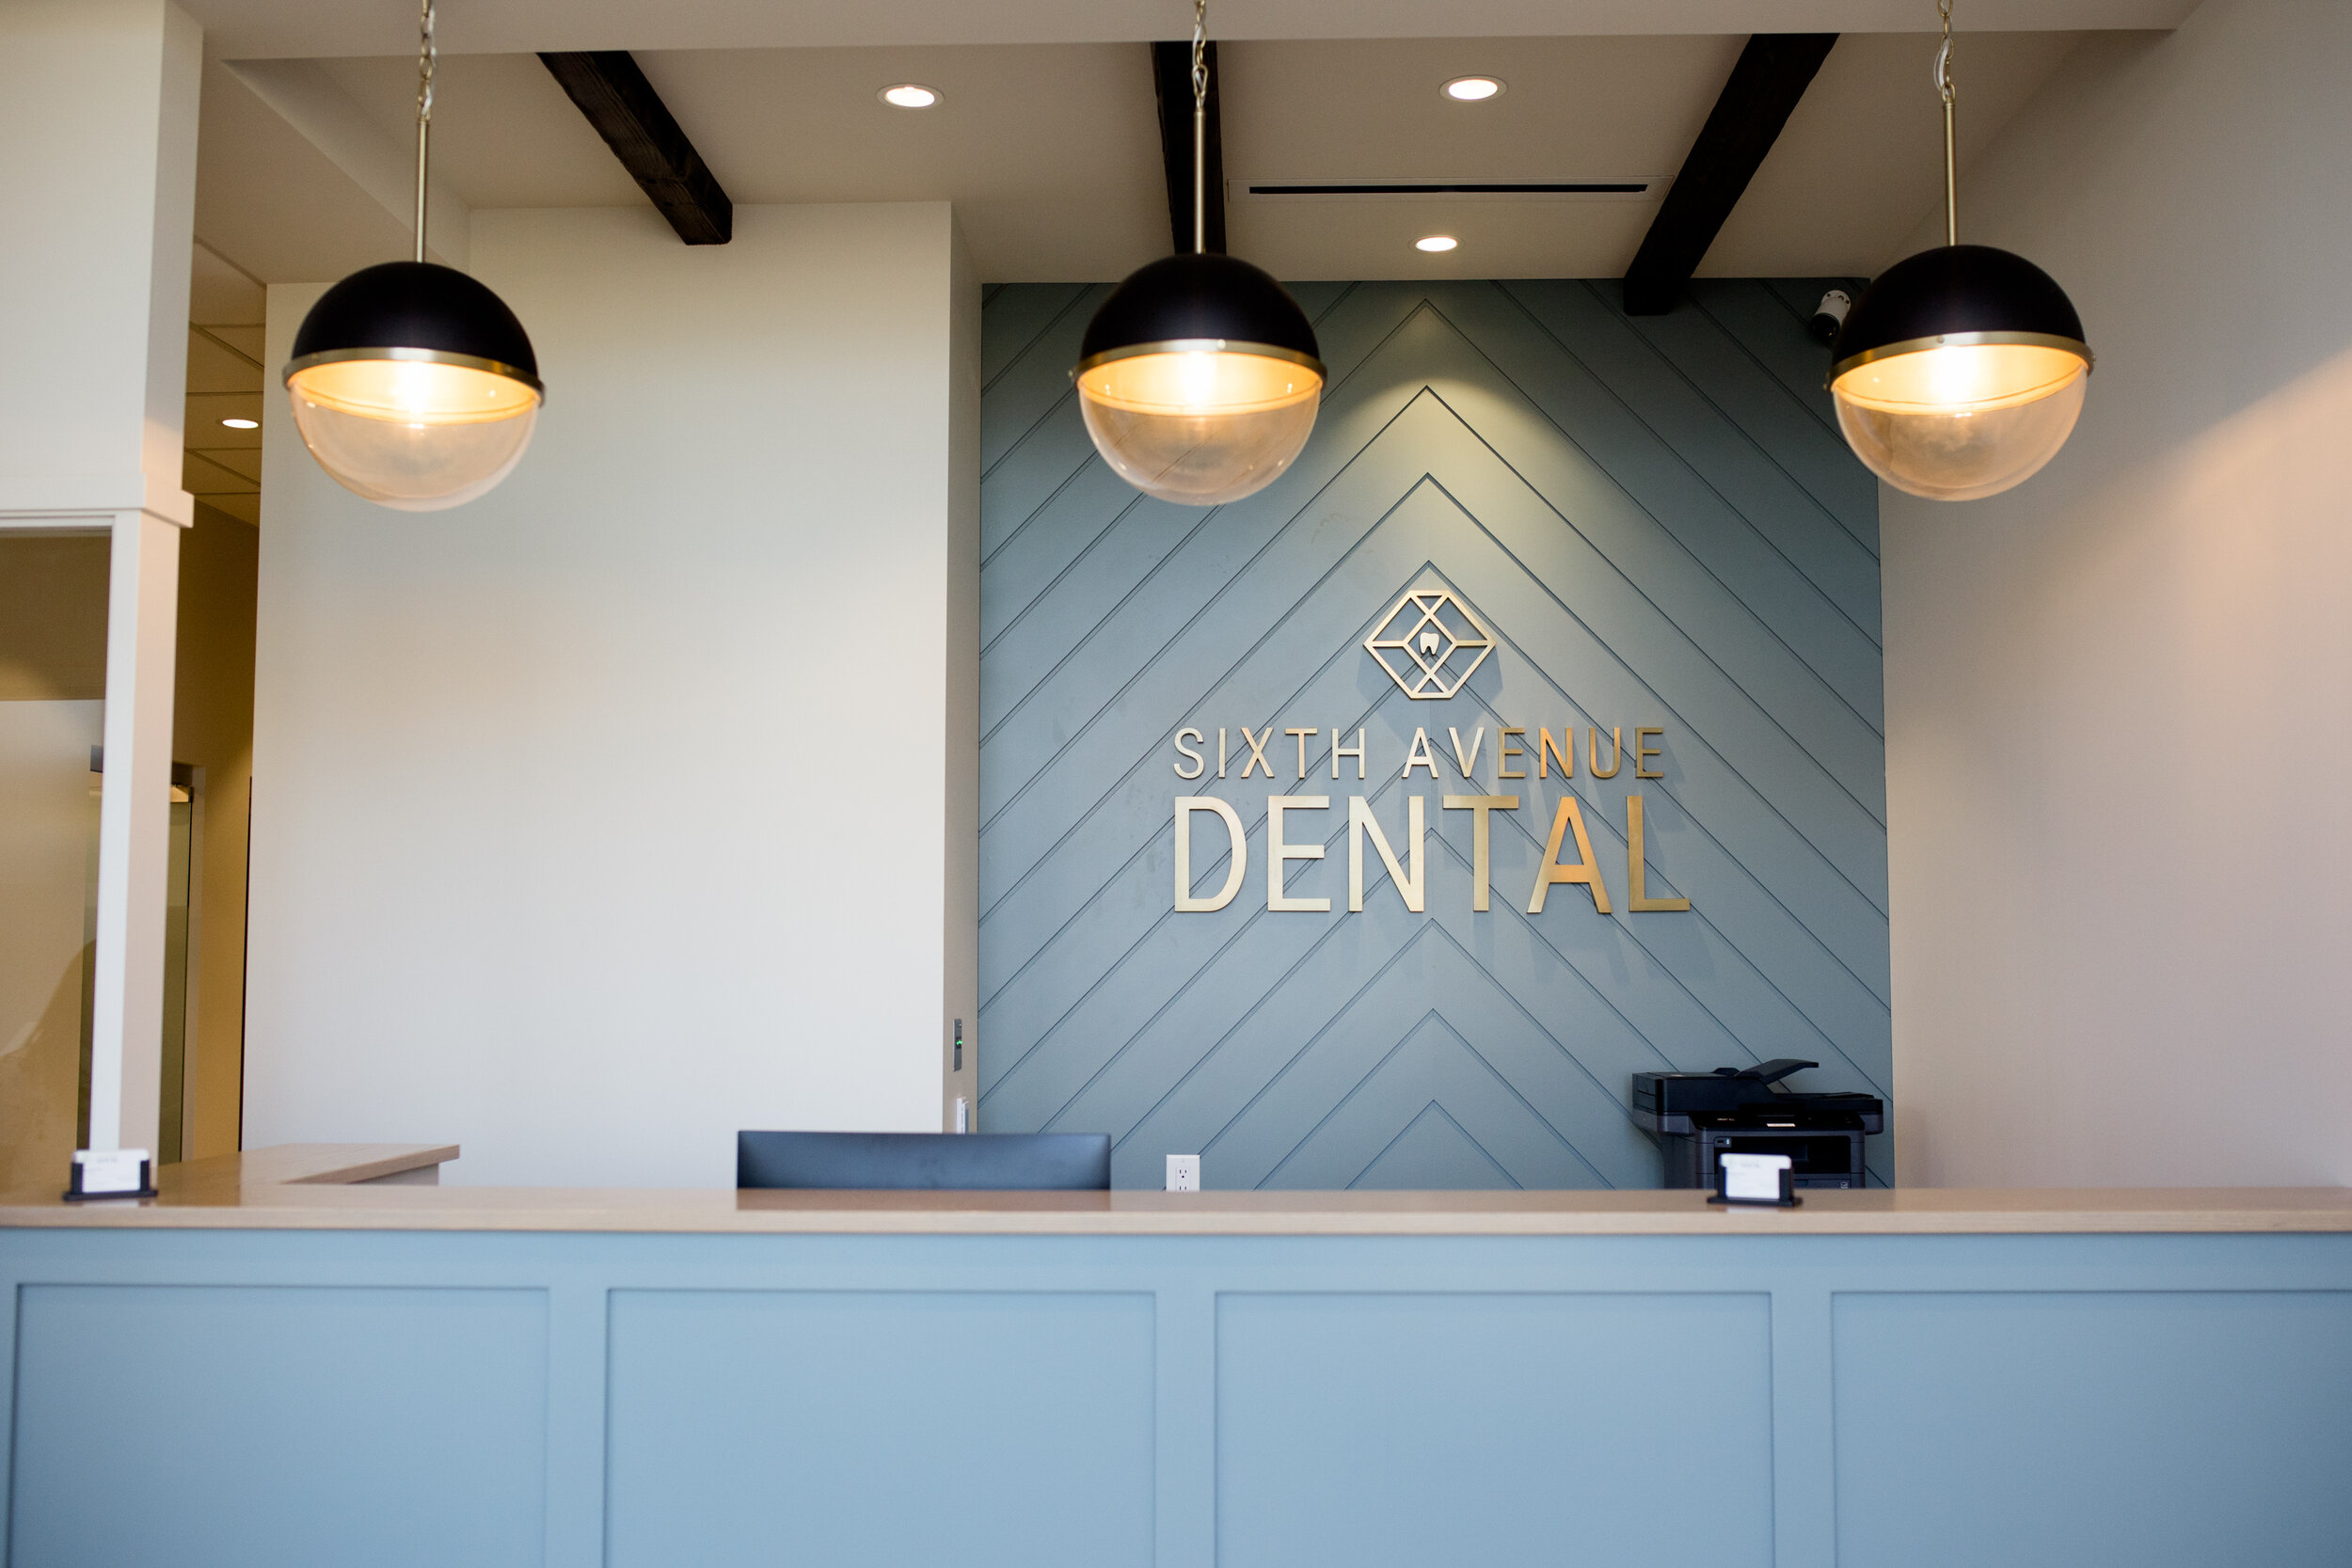 Sixth Avenue Dental